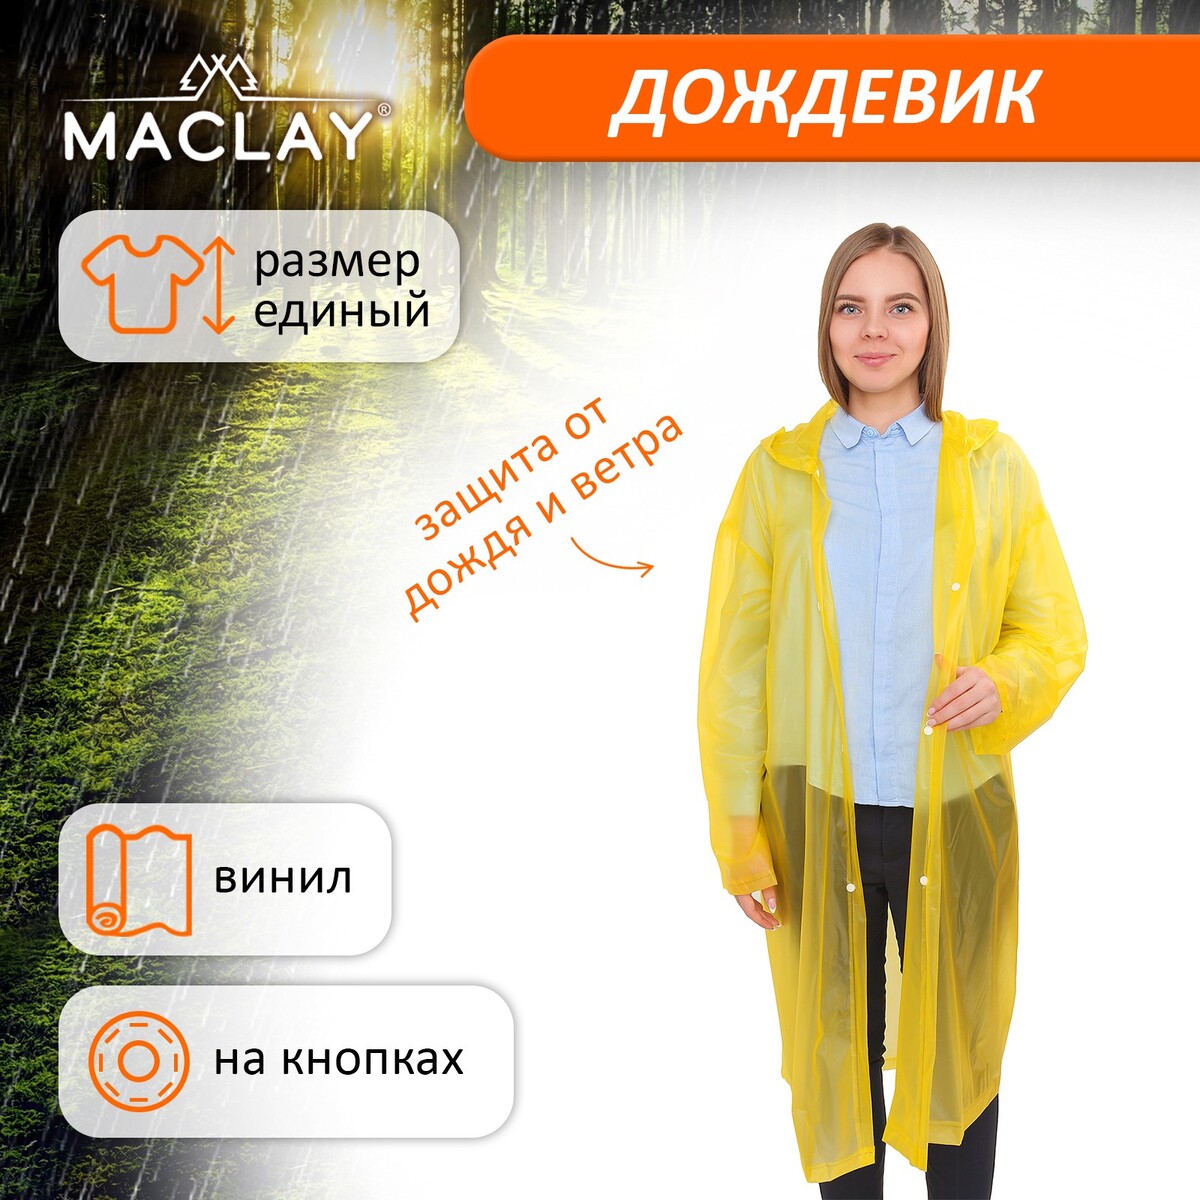 Дождевик-плащ maclay, универсальный, цвет желтый дождевик лотос 7